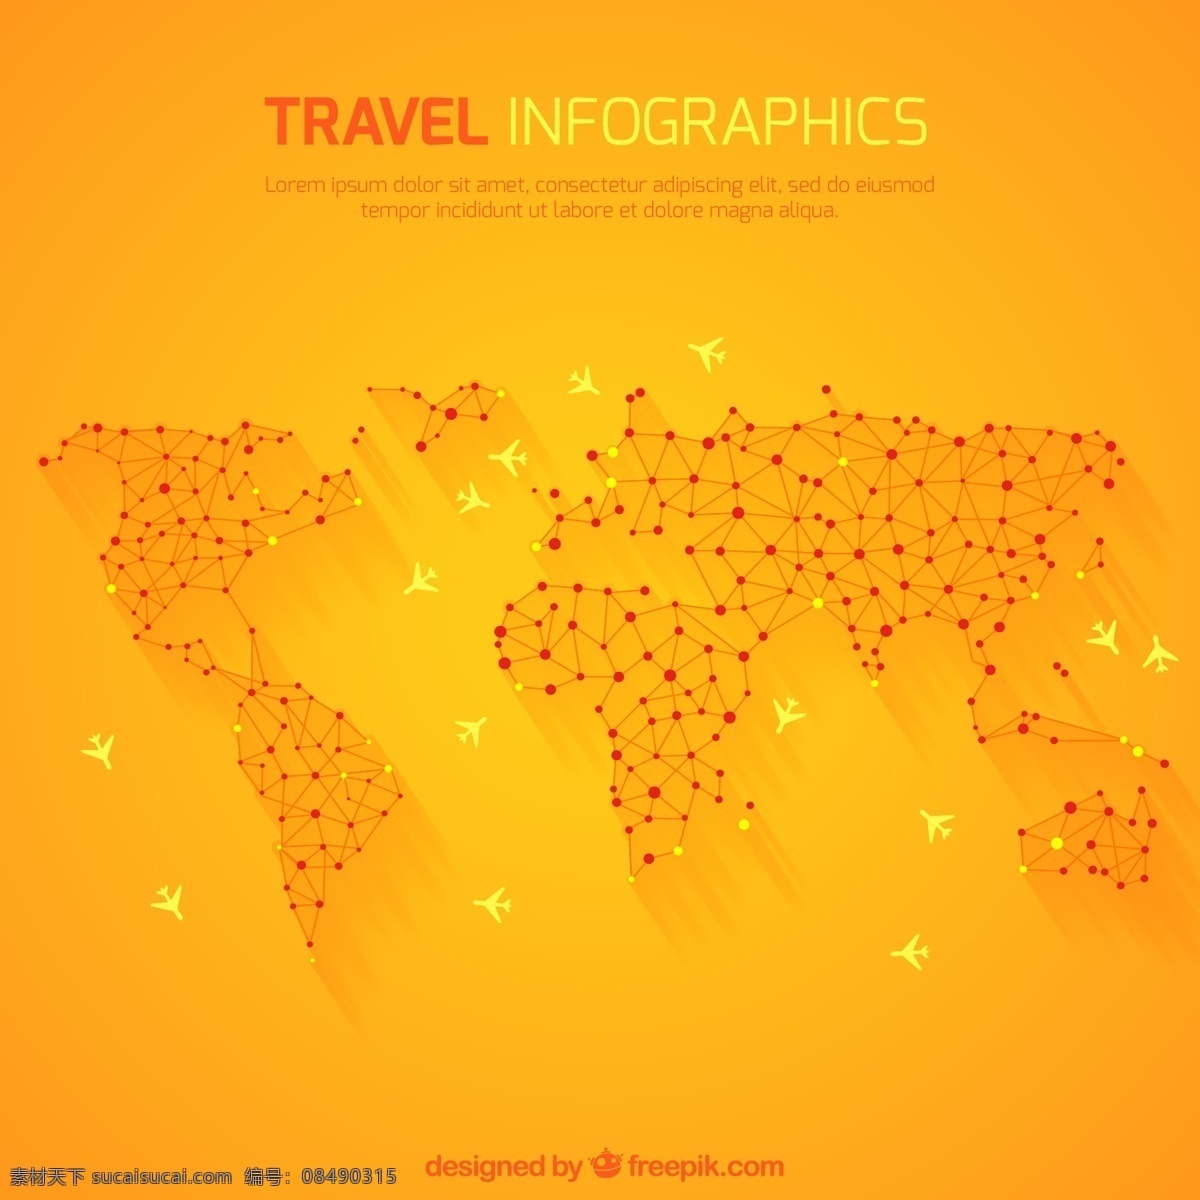 旅游 信息 图表 世界地图 旅行 地图 世界 模板 图形 橙 图 信息图表模板 全世界 橙色